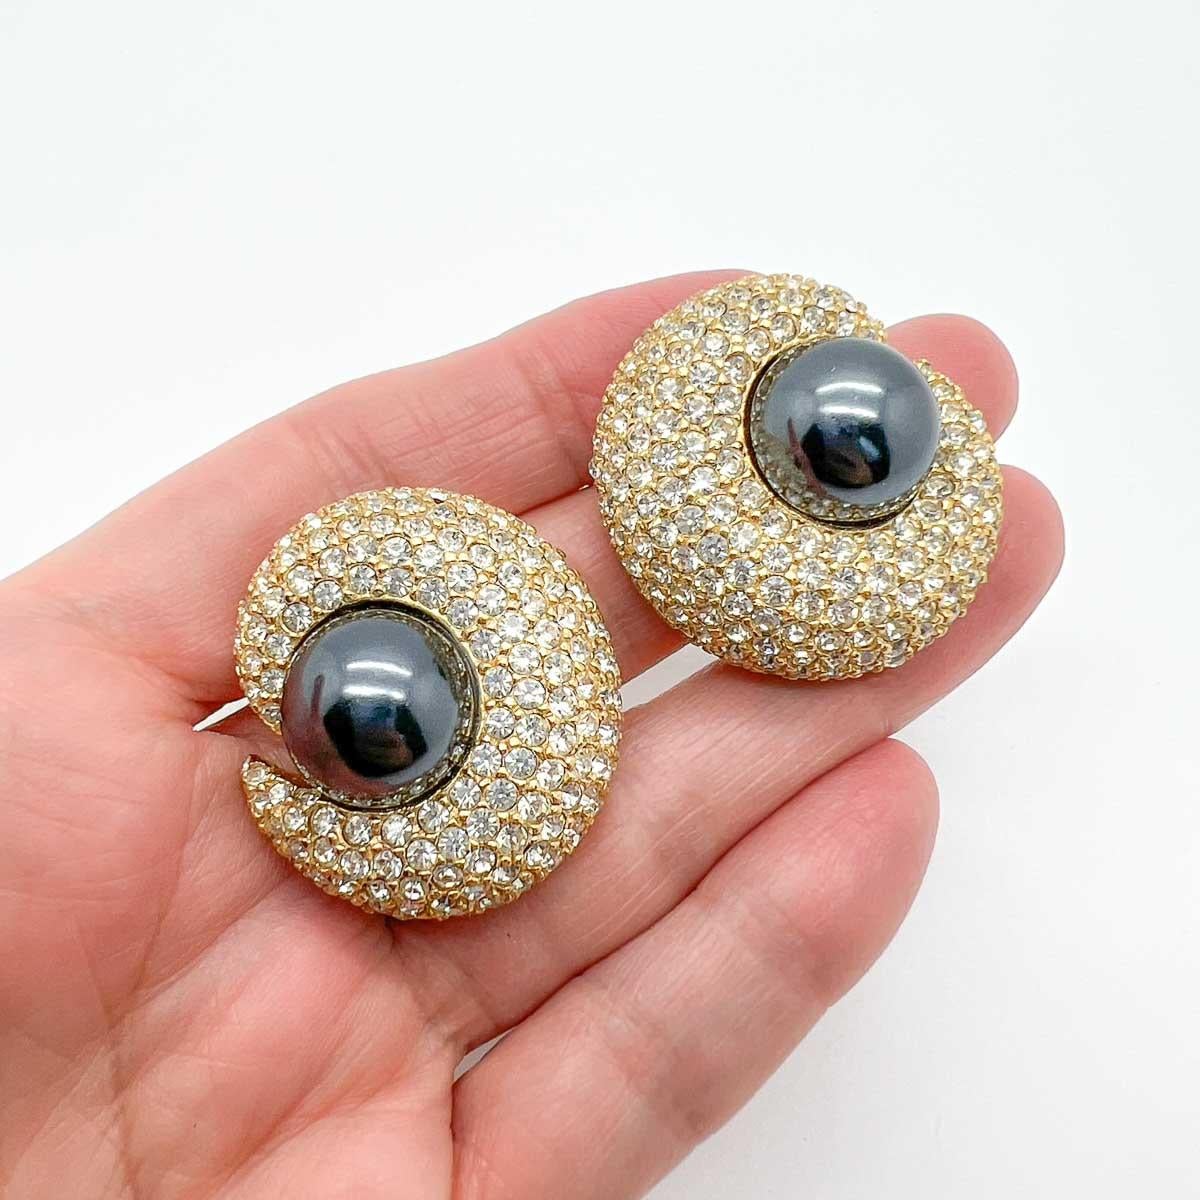 Vintage Ciner Pearl Crescent Earrings. Avec une perle grise merveilleusement opulente au milieu d'un croissant de cristal.
Depuis 1982, la société CINER, basée à New York, conçoit et fabrique des bijoux fantaisie. Se détournant de la production de